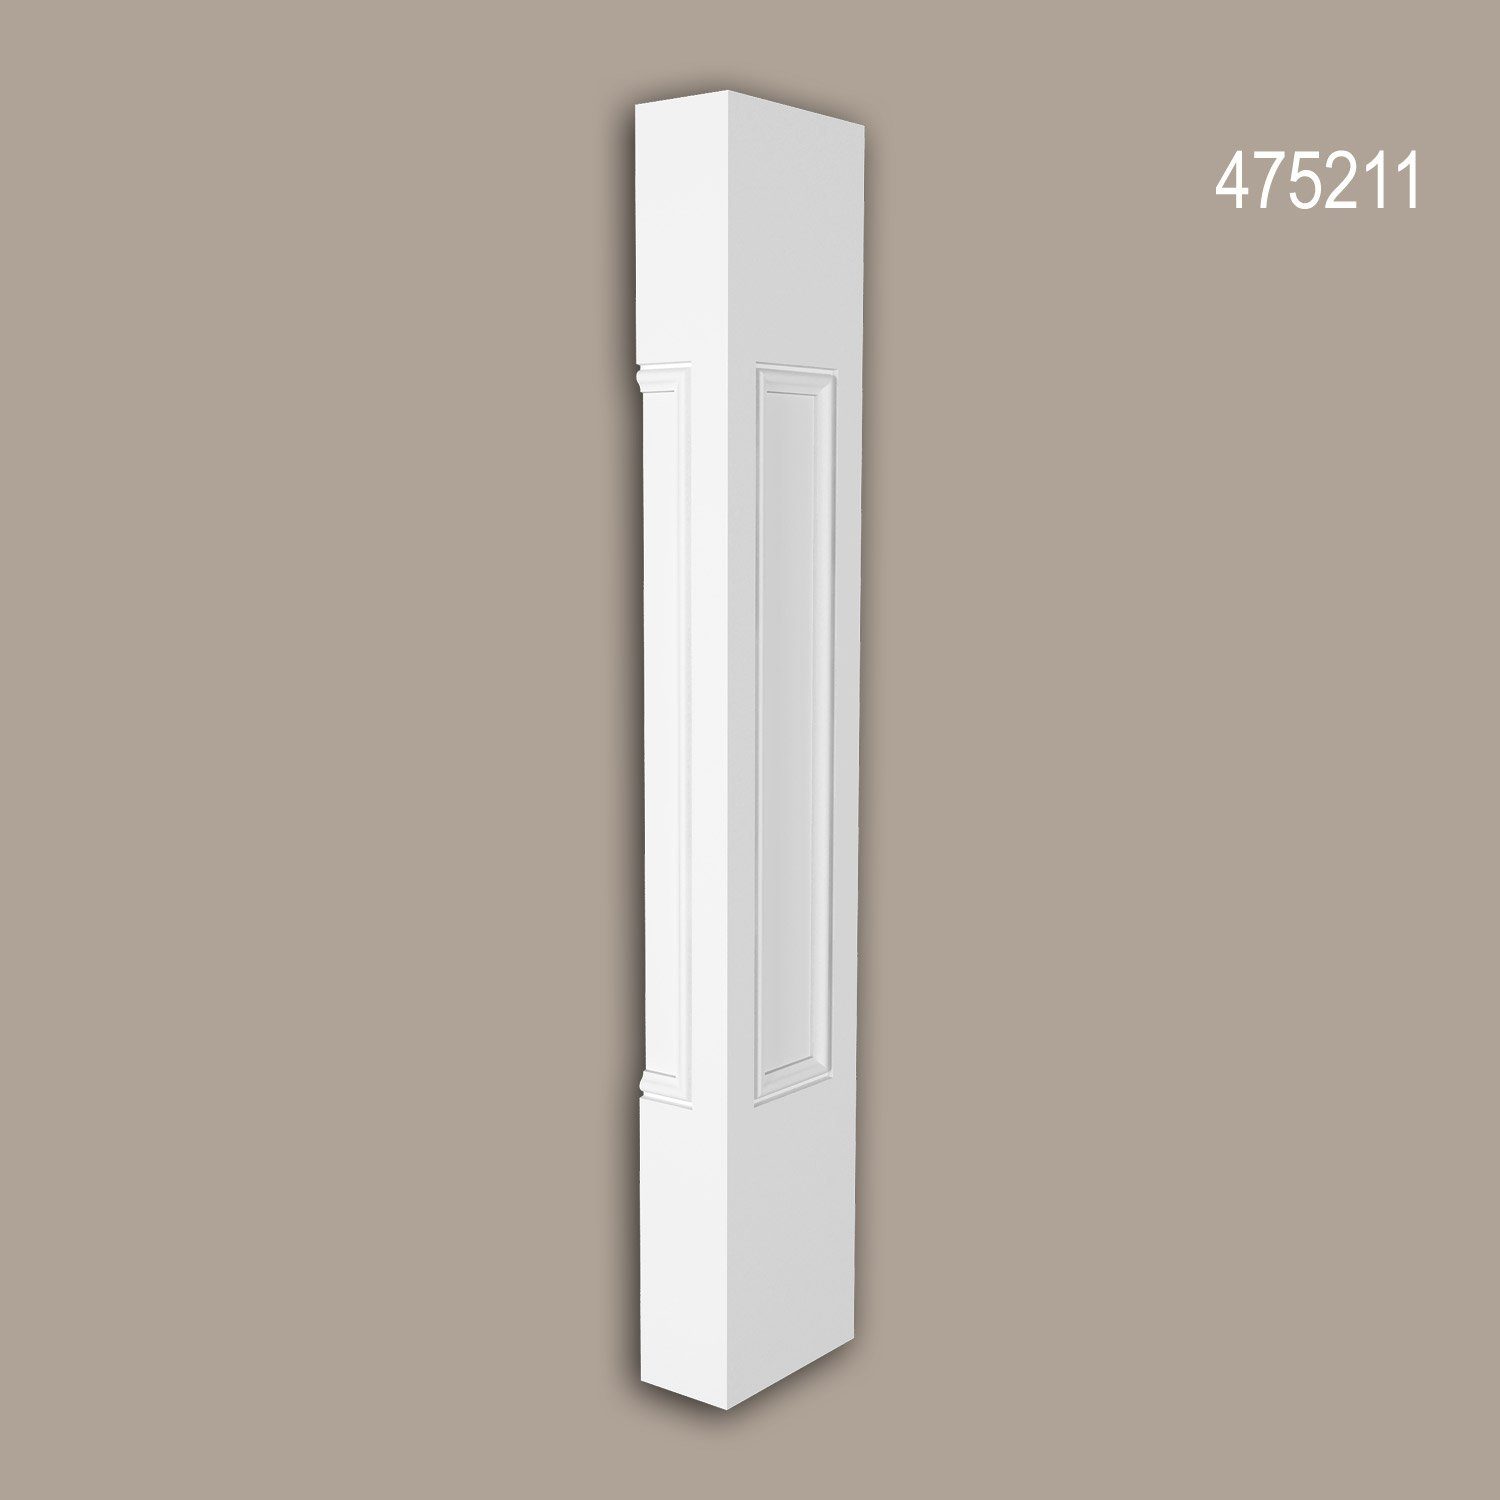 Profhome Wanddekoobjekt 475211 (Halbbalustrade Eckpfosten, 1 St., Außenstuck, Balustrade, Fassadenelement), weiß, vorgrundiert, für Fassadendekoration, Stil: Neo-Klassizismus